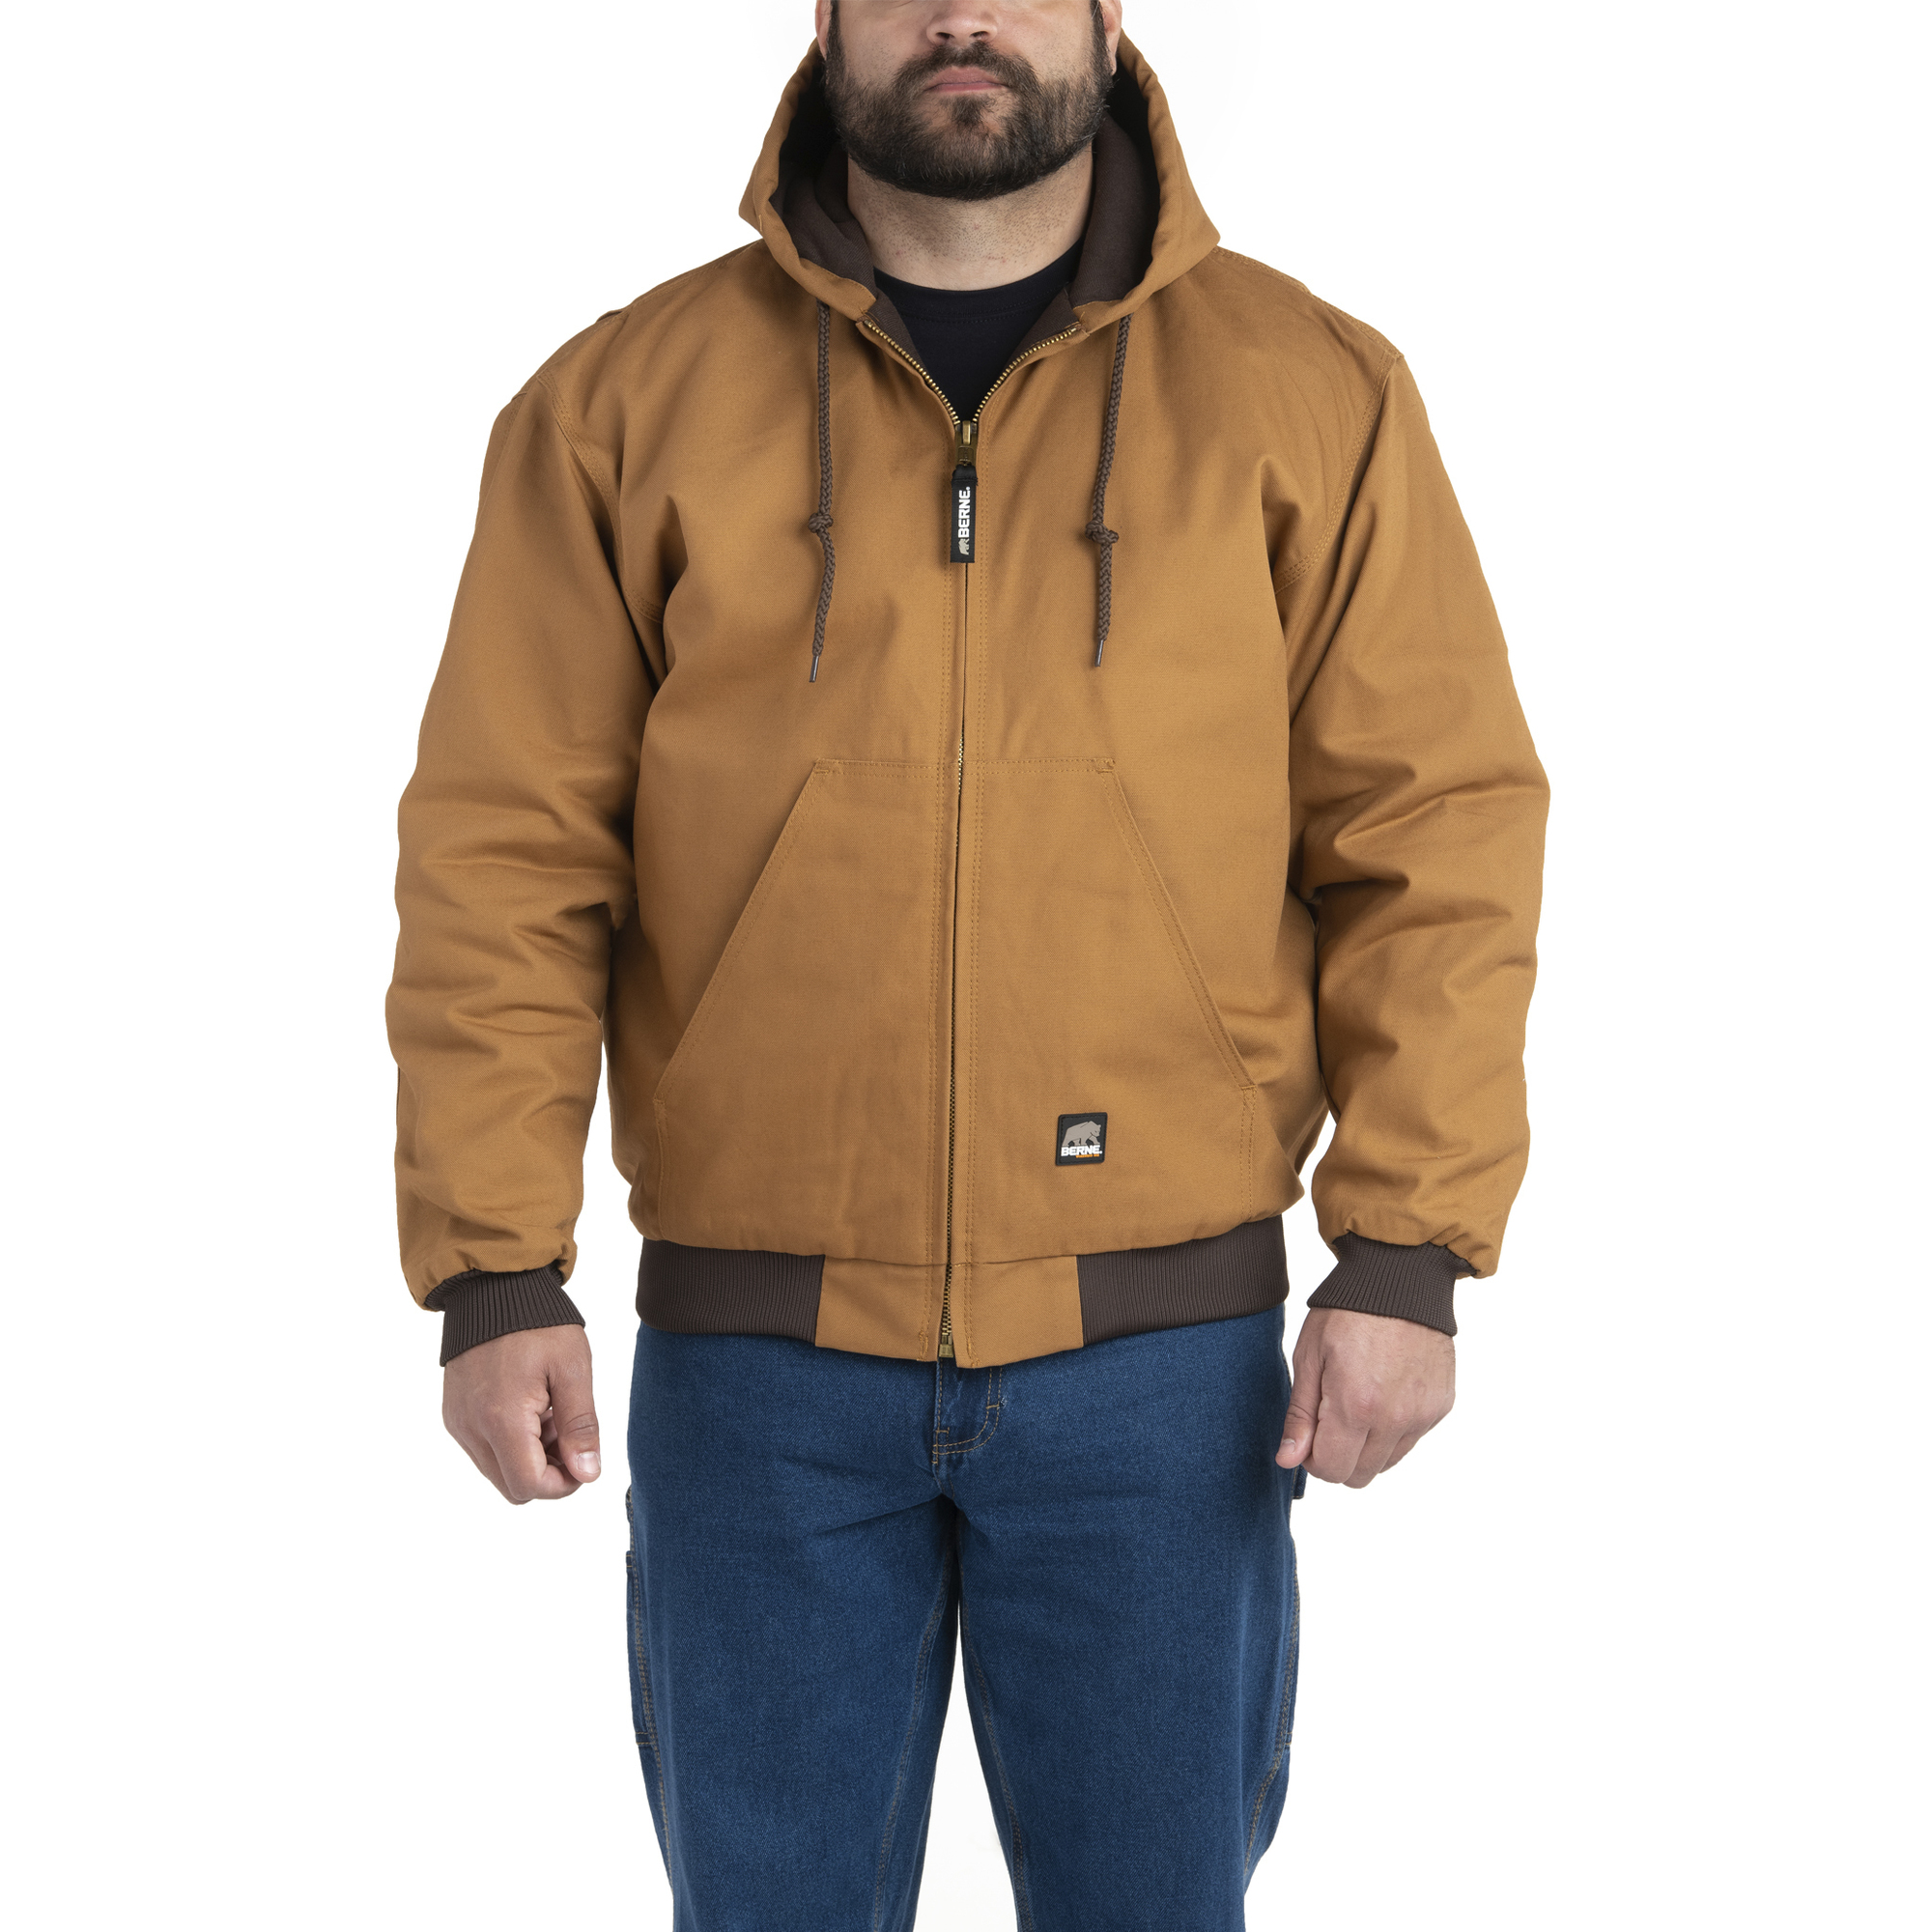 Berne Apparel, Heritage Hooded Jacket, Size 6XL, Color Brown Duck, Model HJ51